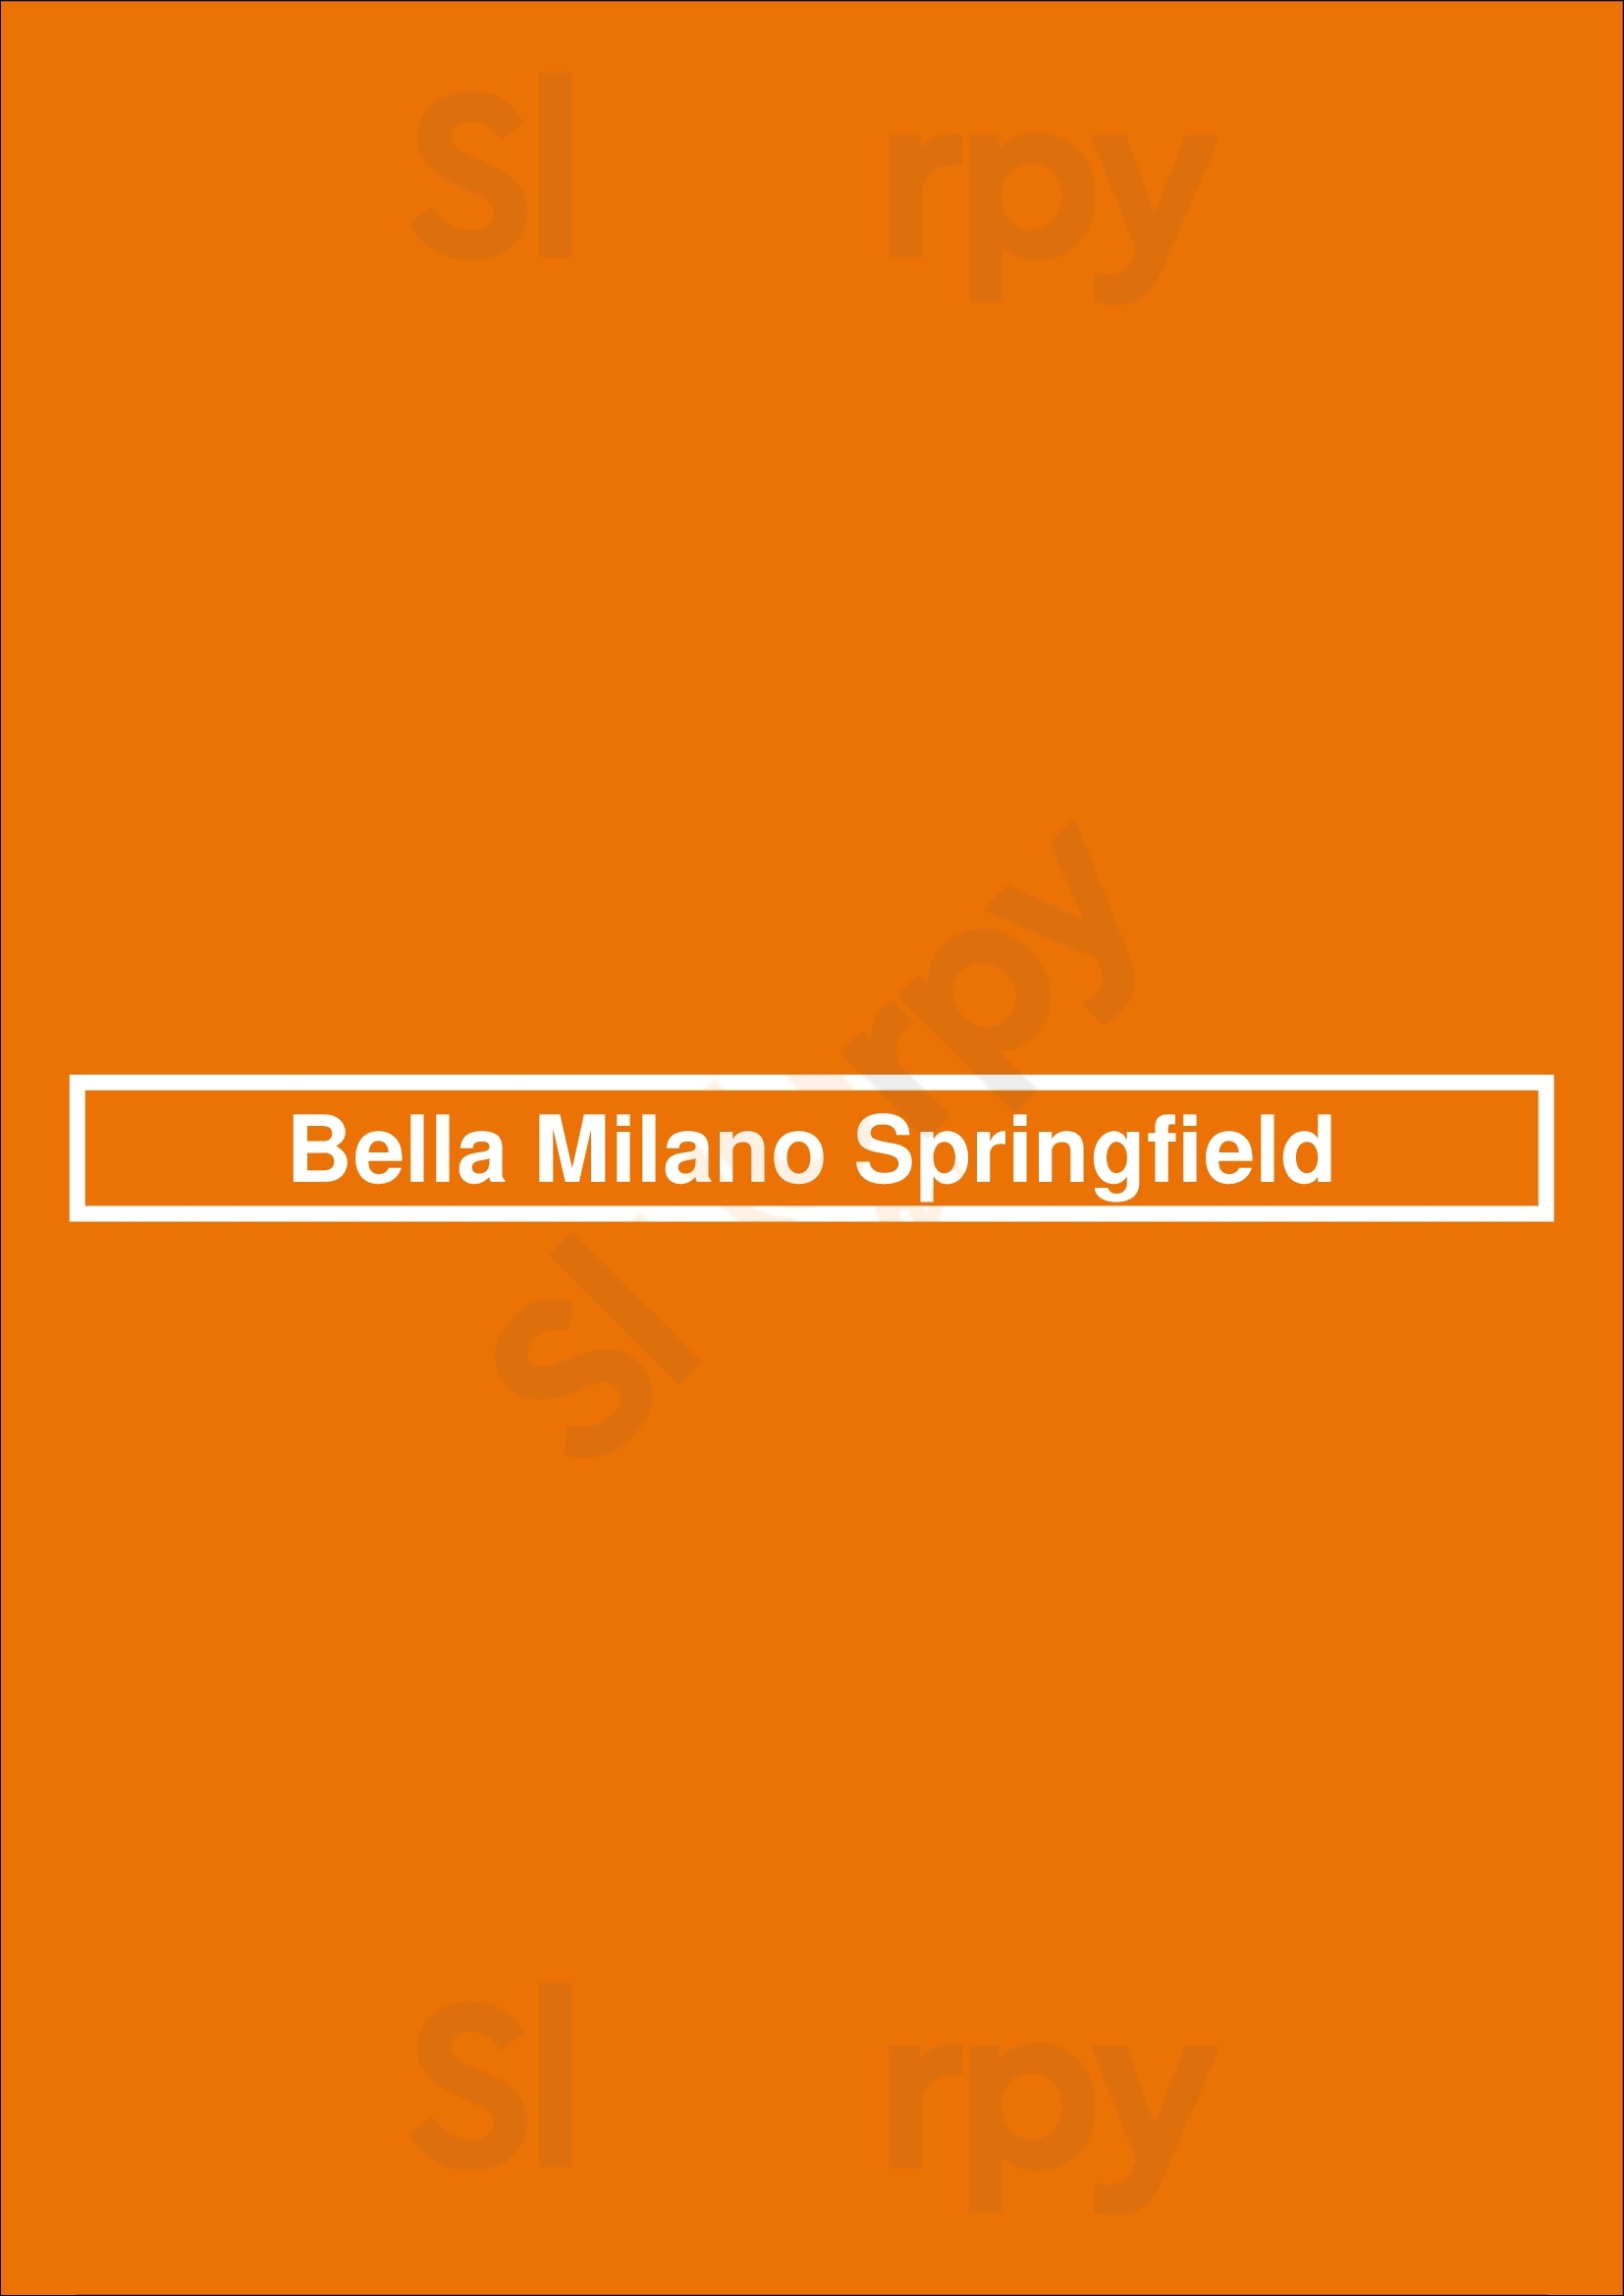 Bella Milano Springfield Springfield Menu - 1